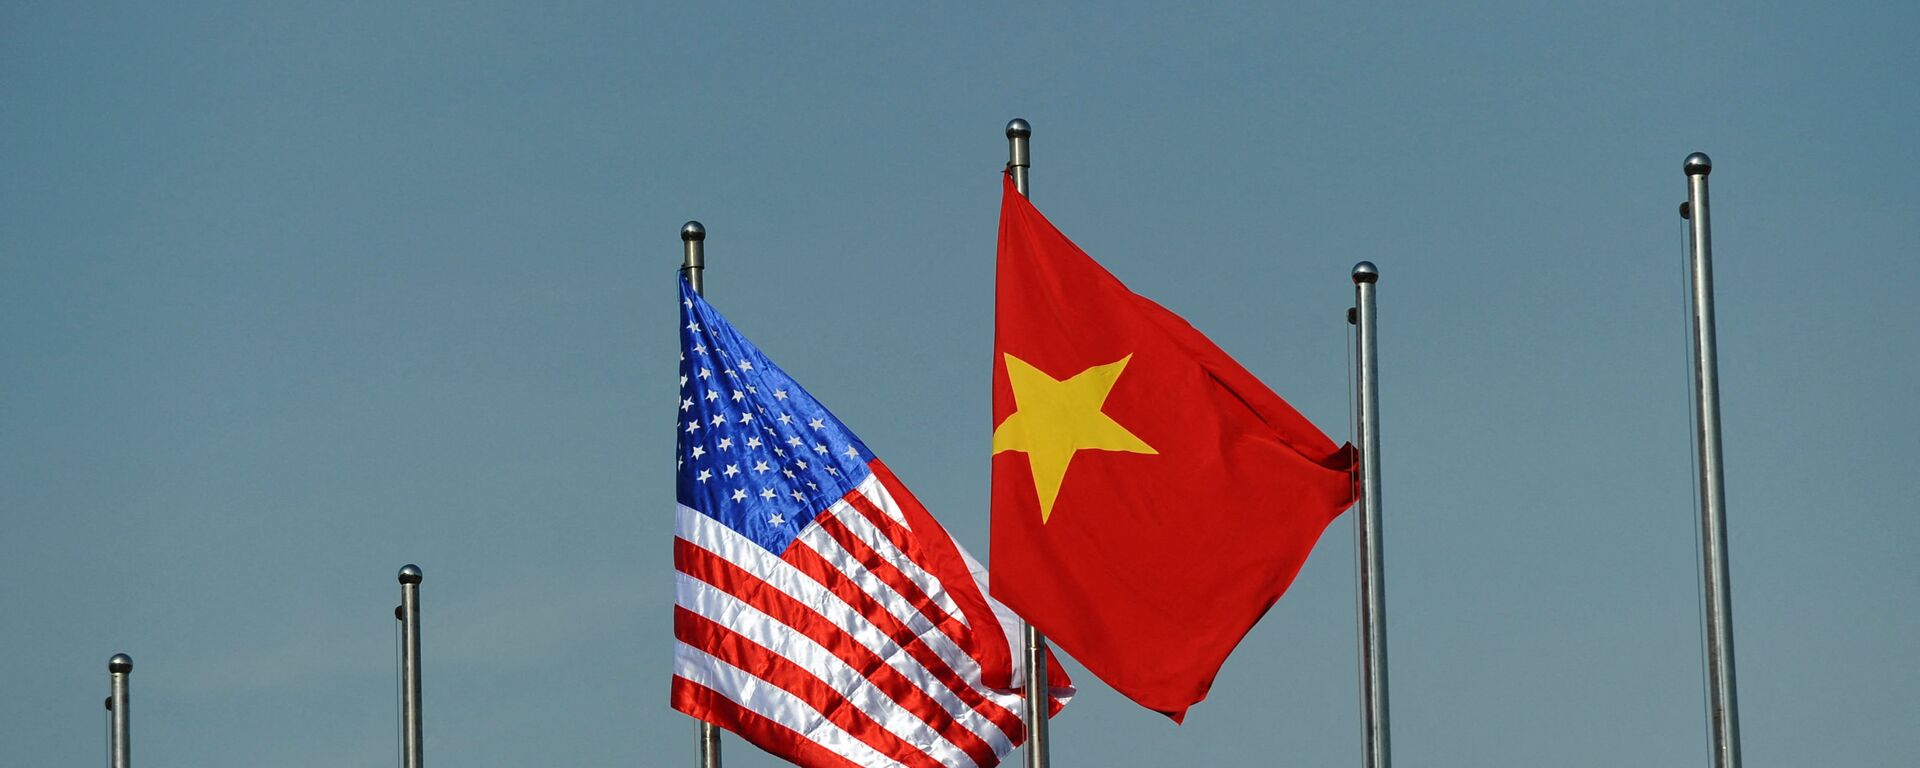 Quốc kỳ của Hoa Kỳ và Việt Nam. - Sputnik Việt Nam, 1920, 28.04.2022